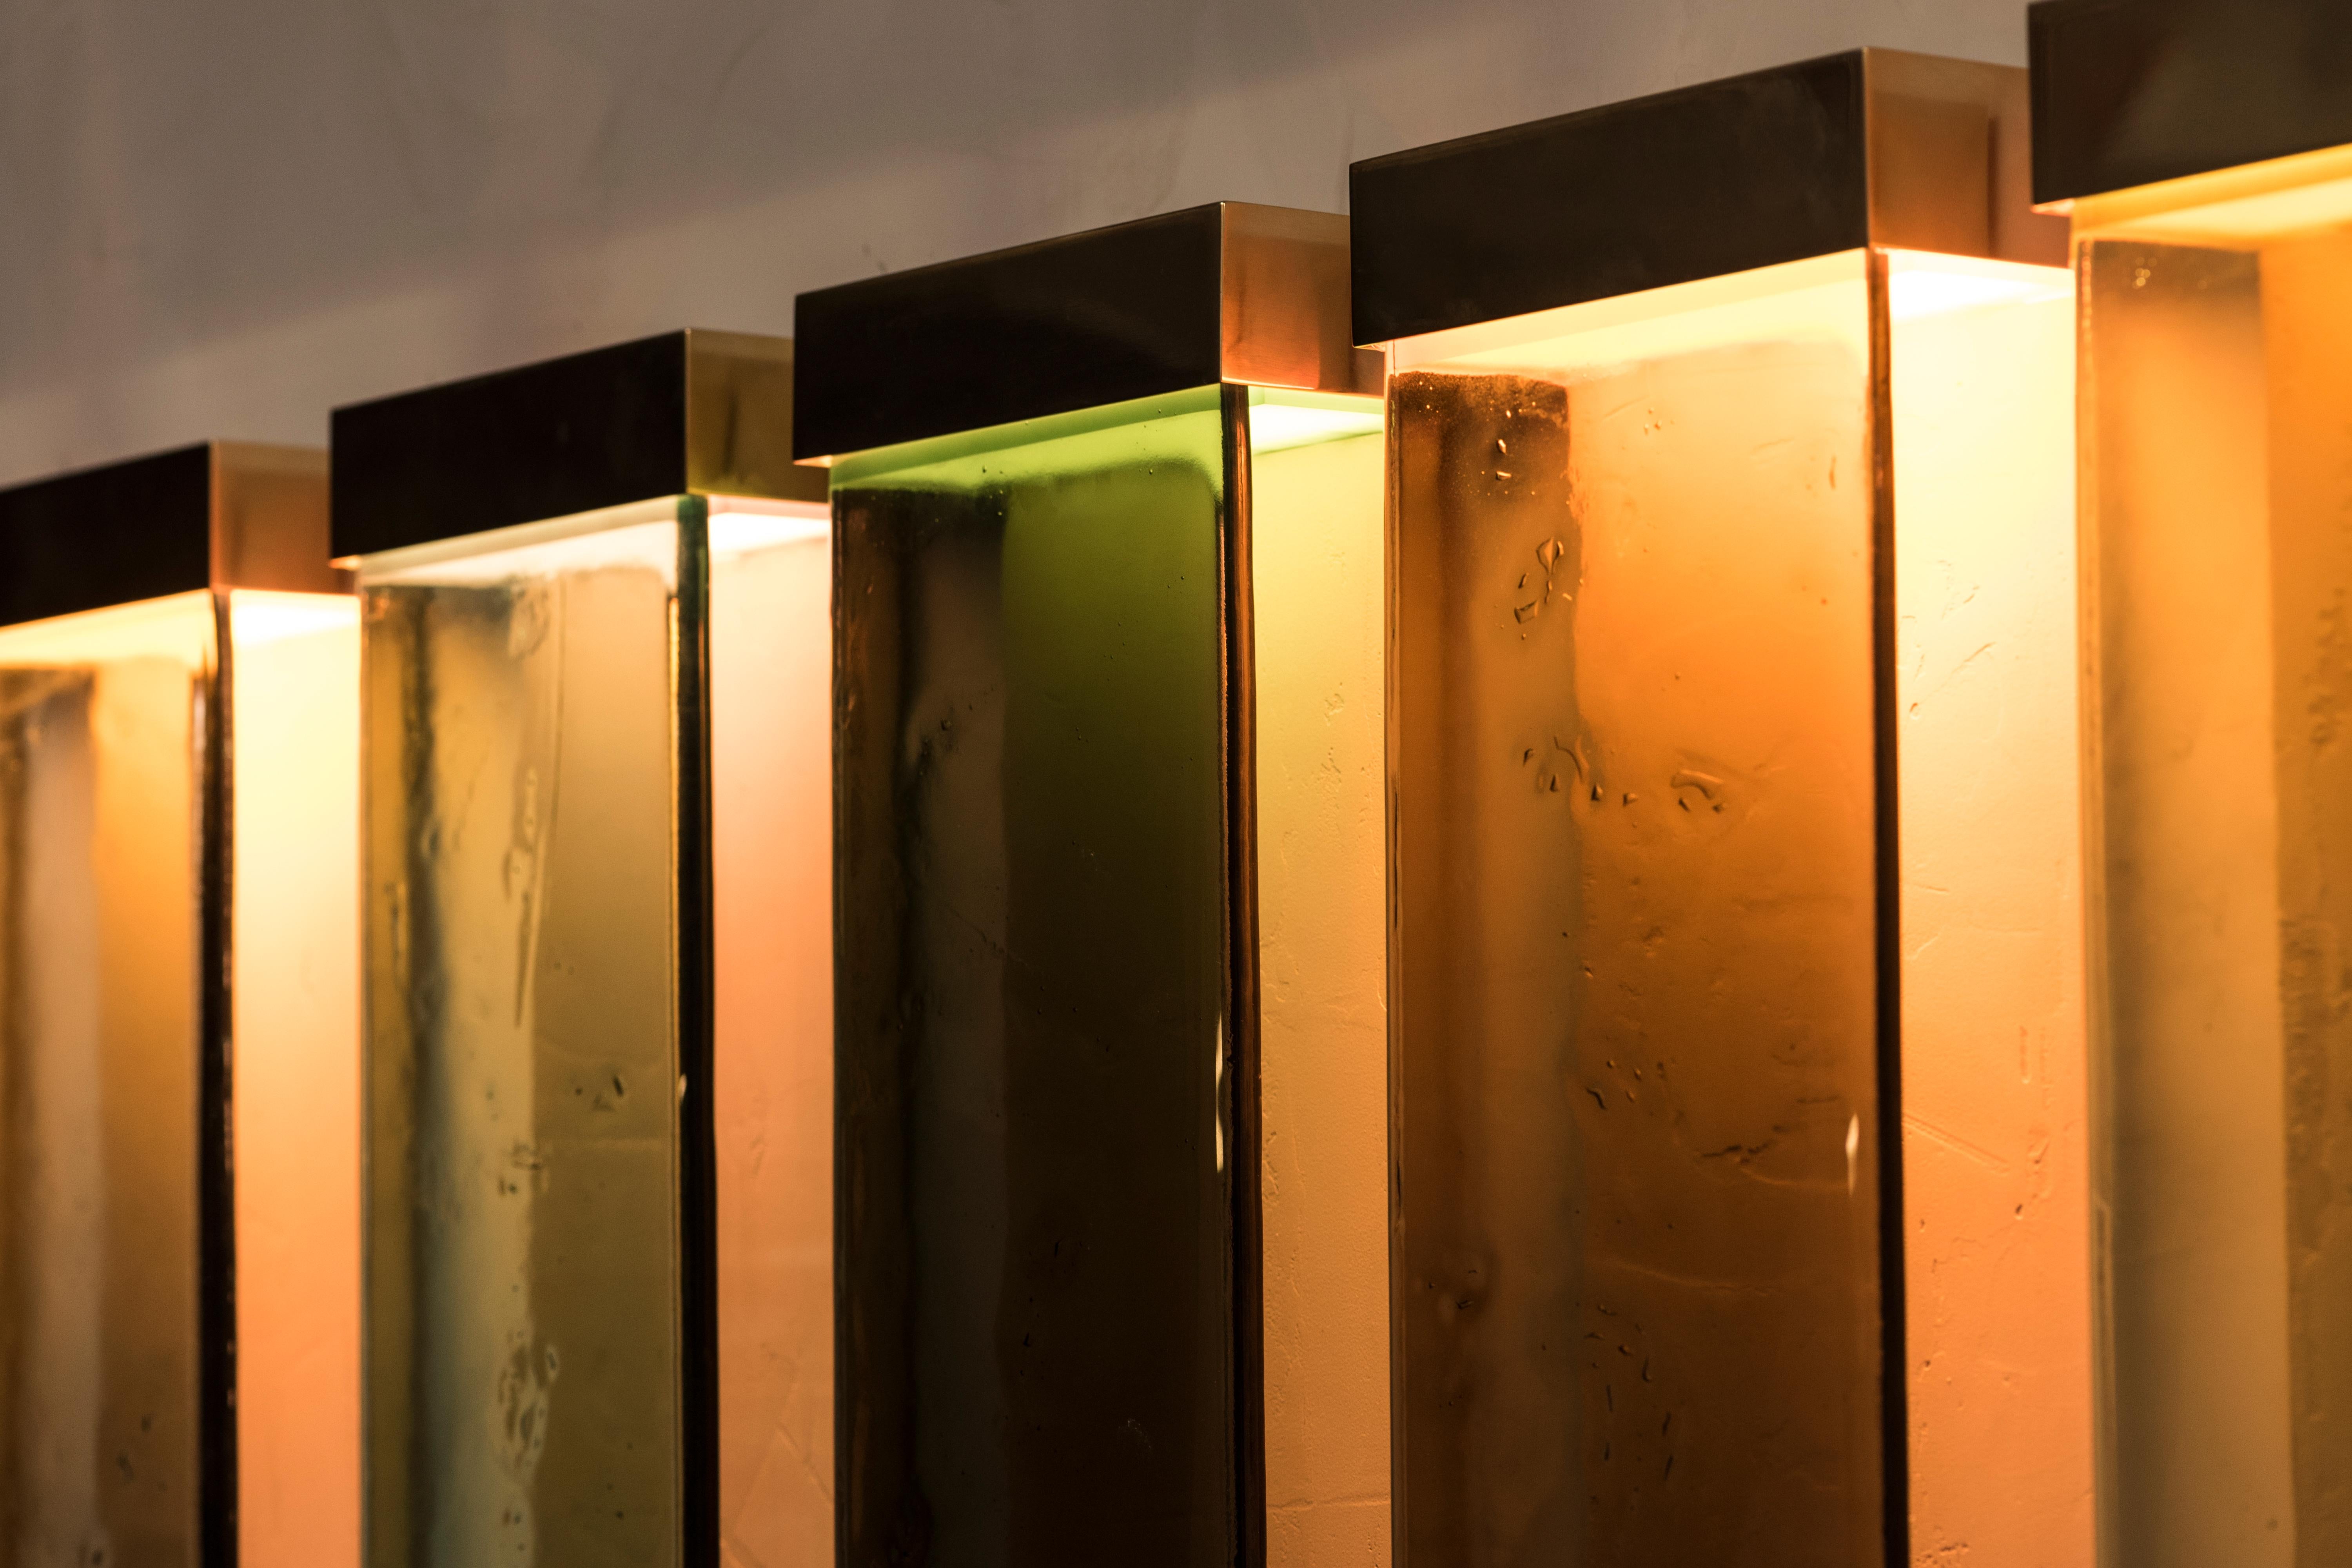 Die vom Minimalismus inspirierten Jud-Lampen sind eine Hommage an den Künstler Donald Judd. Die verschiedenen Schattierungen der lichtdurchlässigen Glas- und Harzfilter wurden zu einem kohärenten und ausgewogenen Farbschema verschmolzen. Jedes Stück